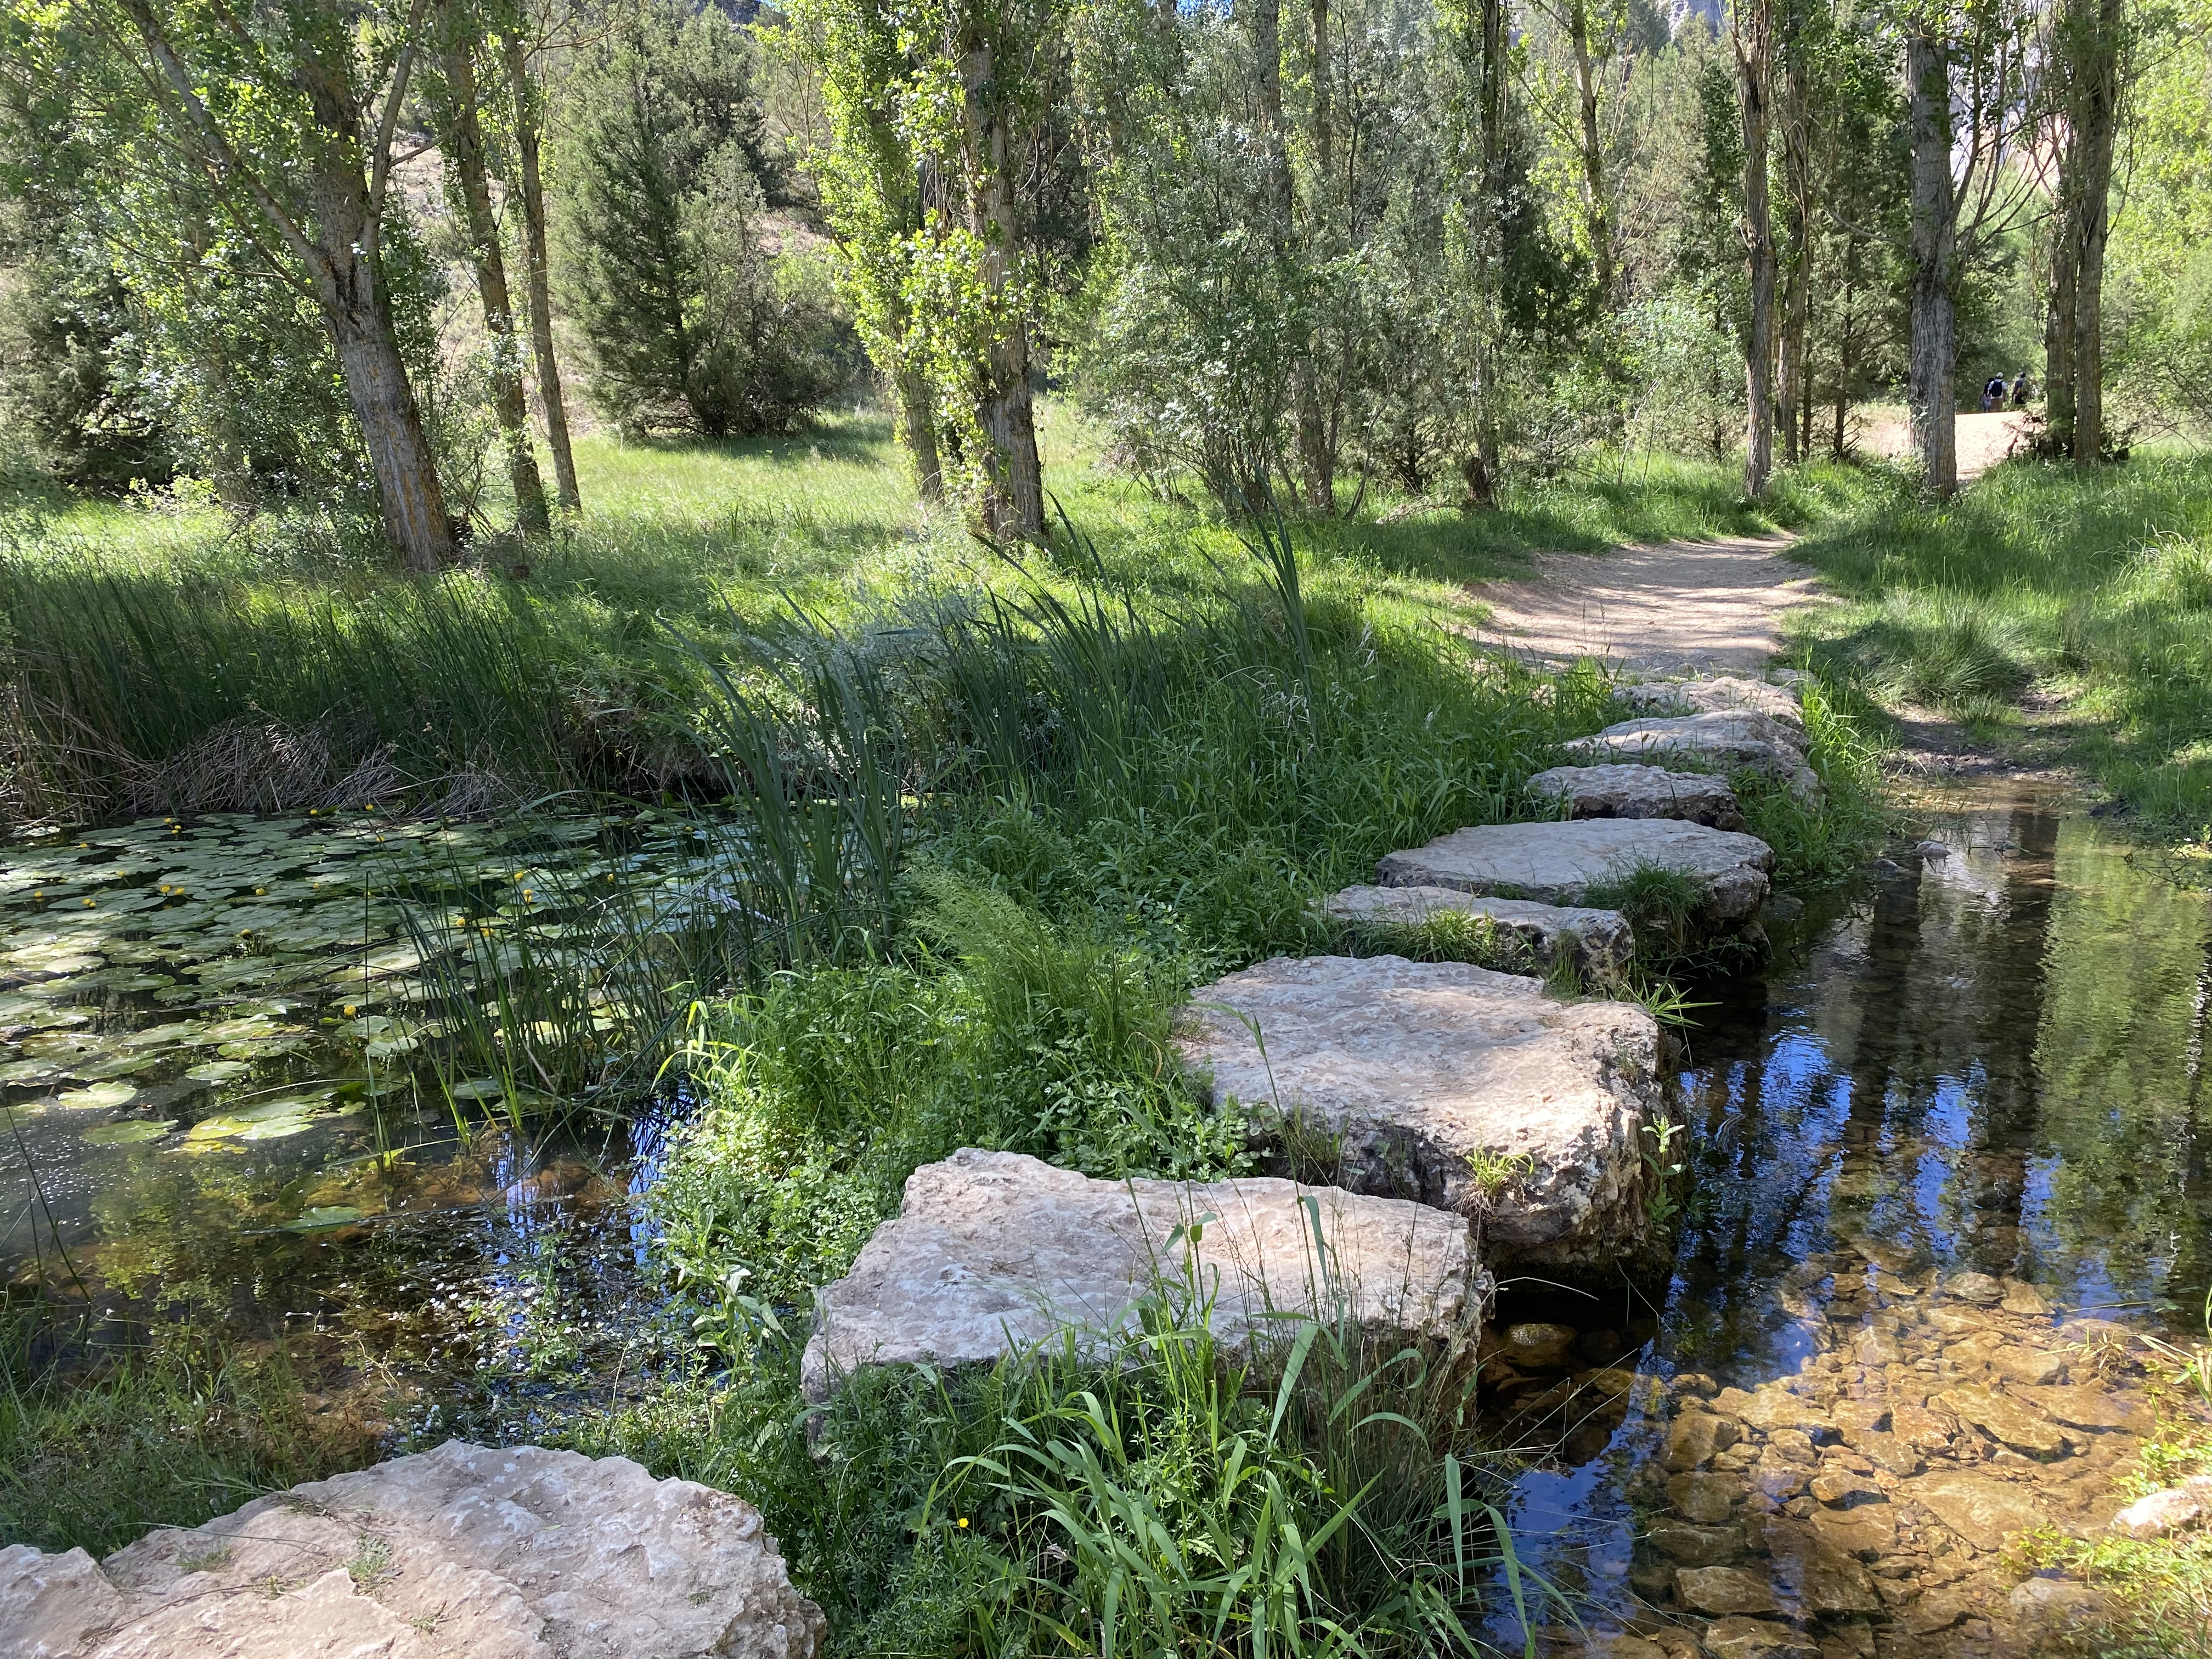 Stones create a rudimentary path across a creek which snakes through the Cañón del Rio Lobos 